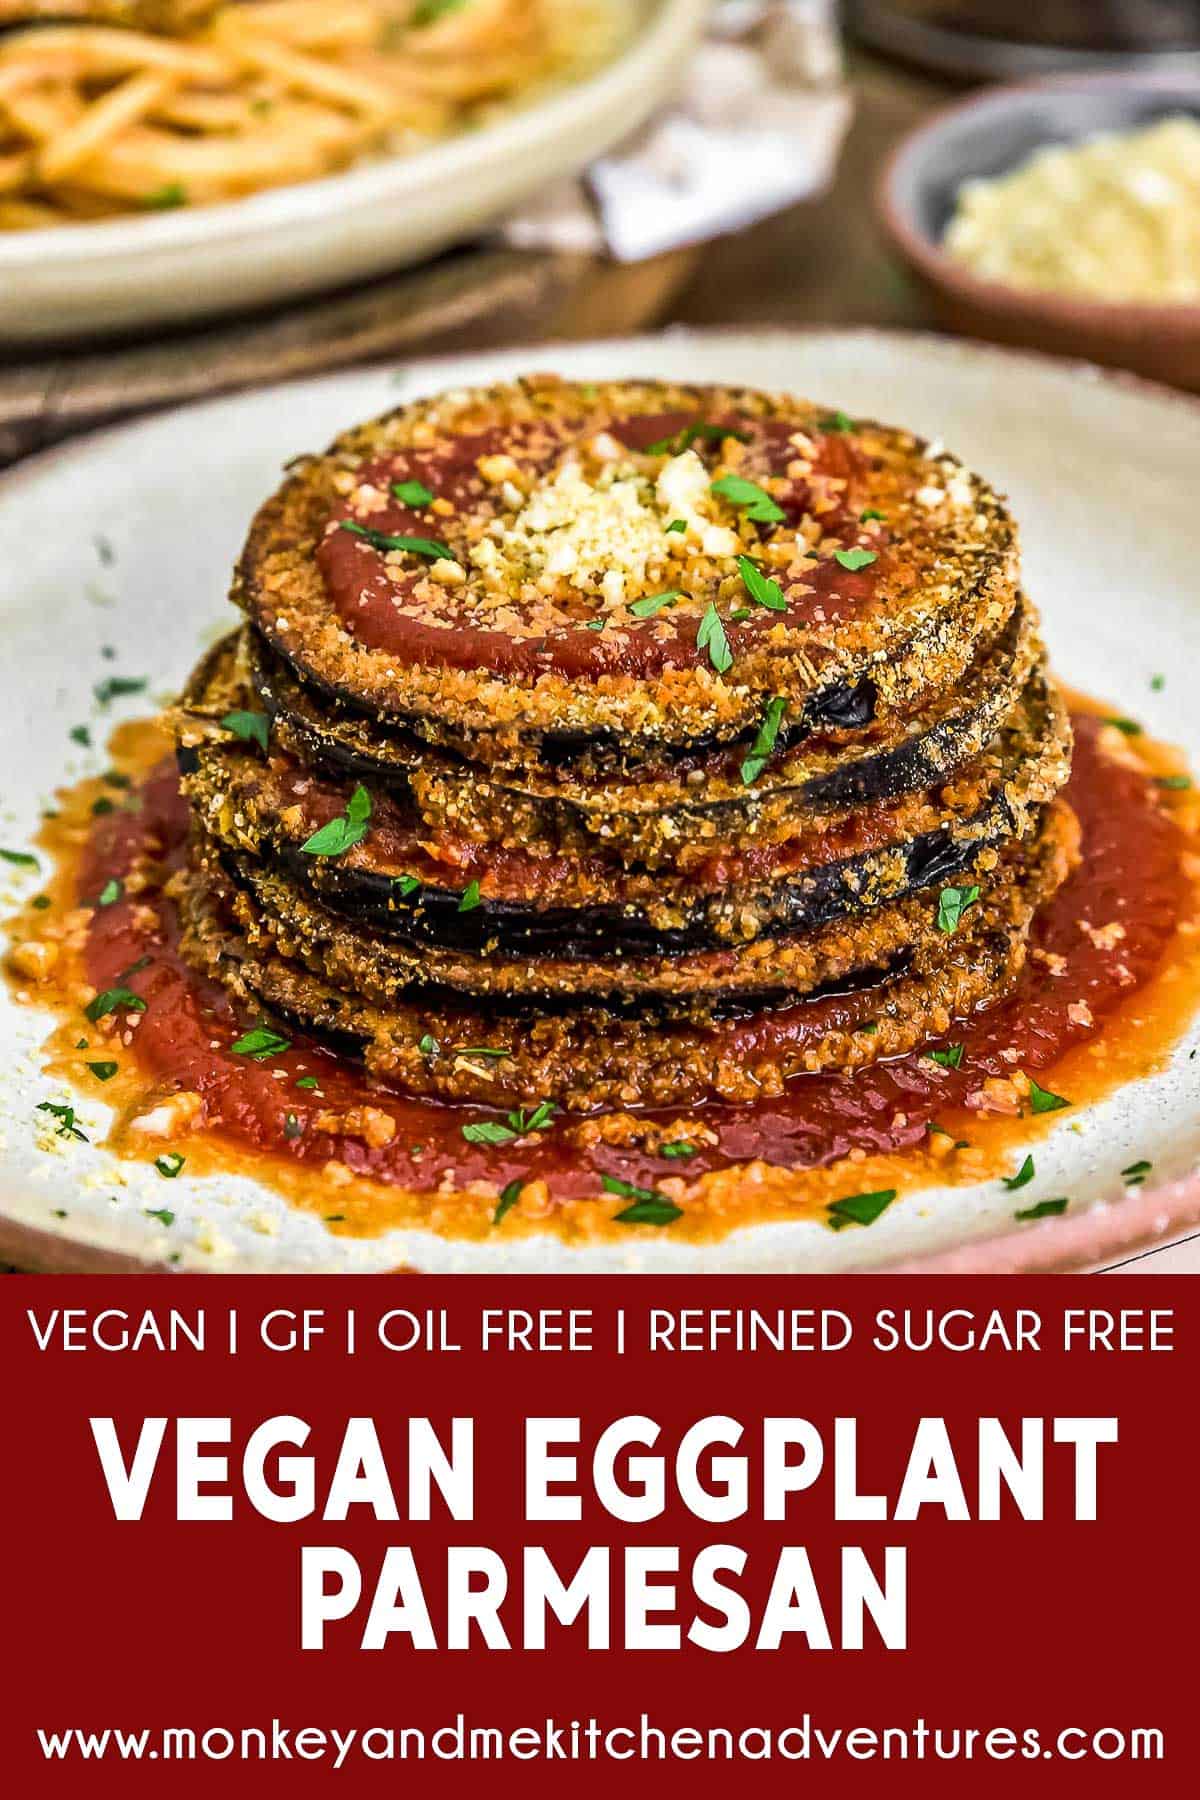 Vegan Eggplant Parmesan with text description